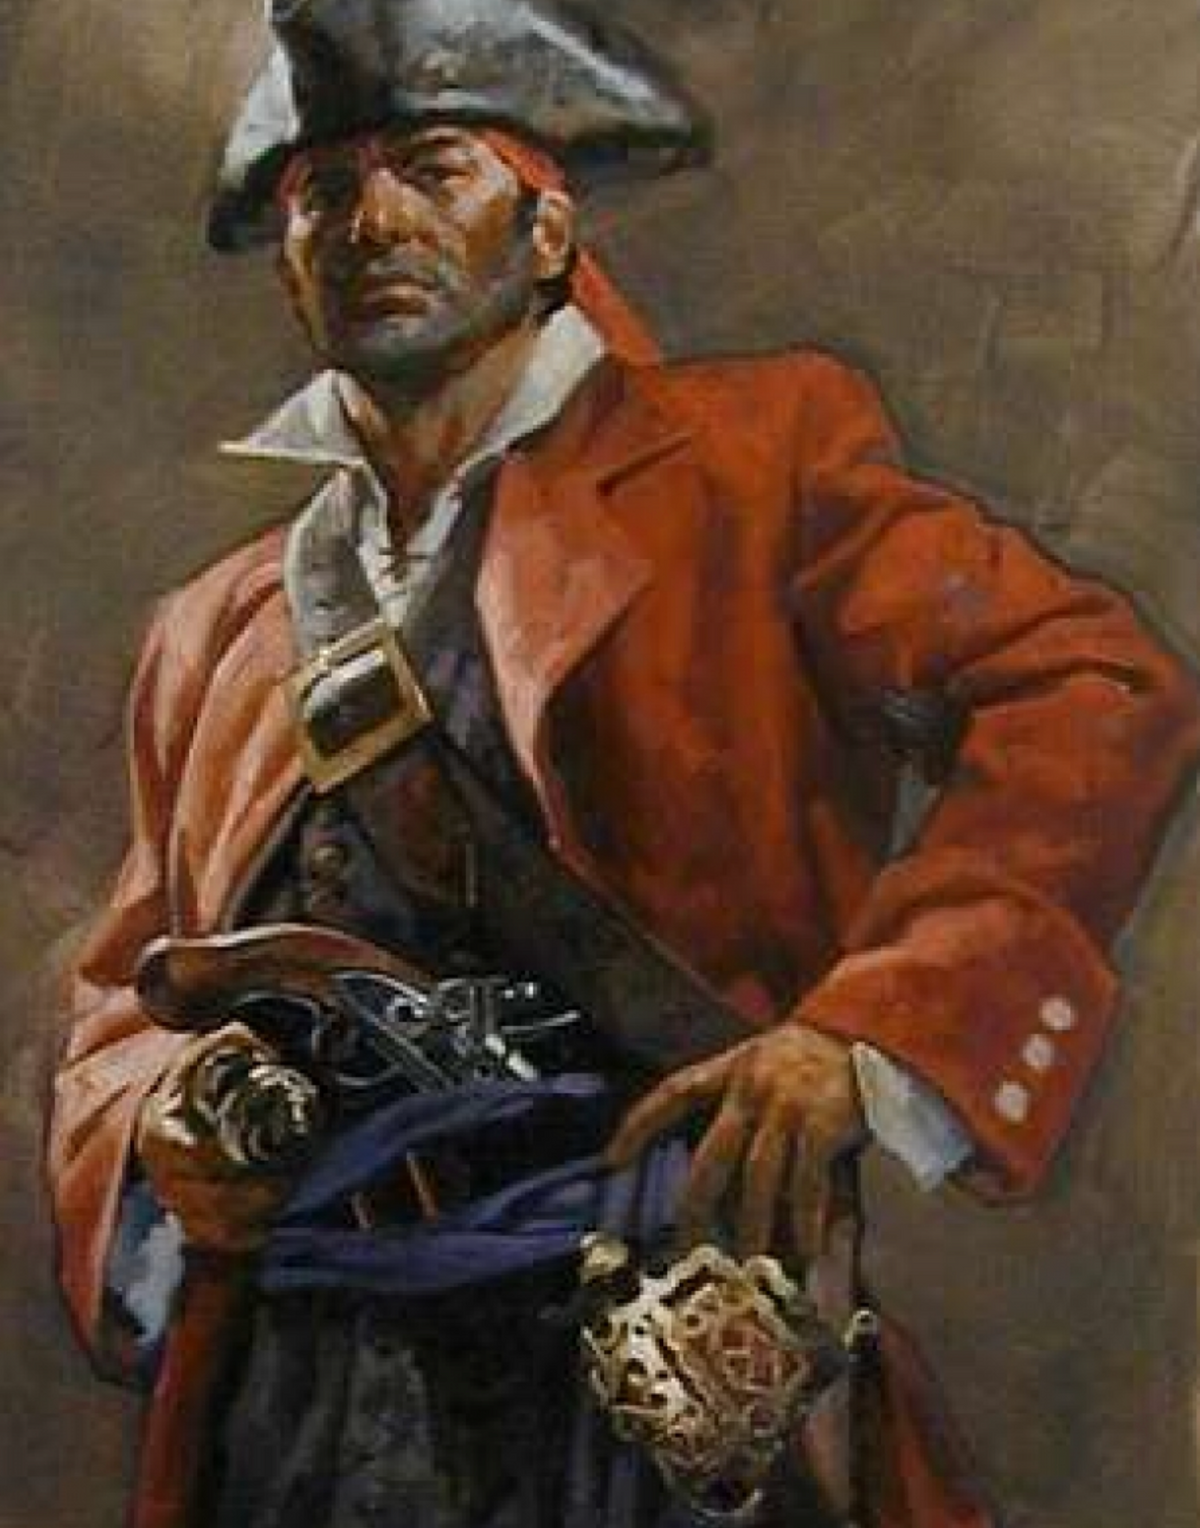 Pirate Plunder – Decopolis Tulsa